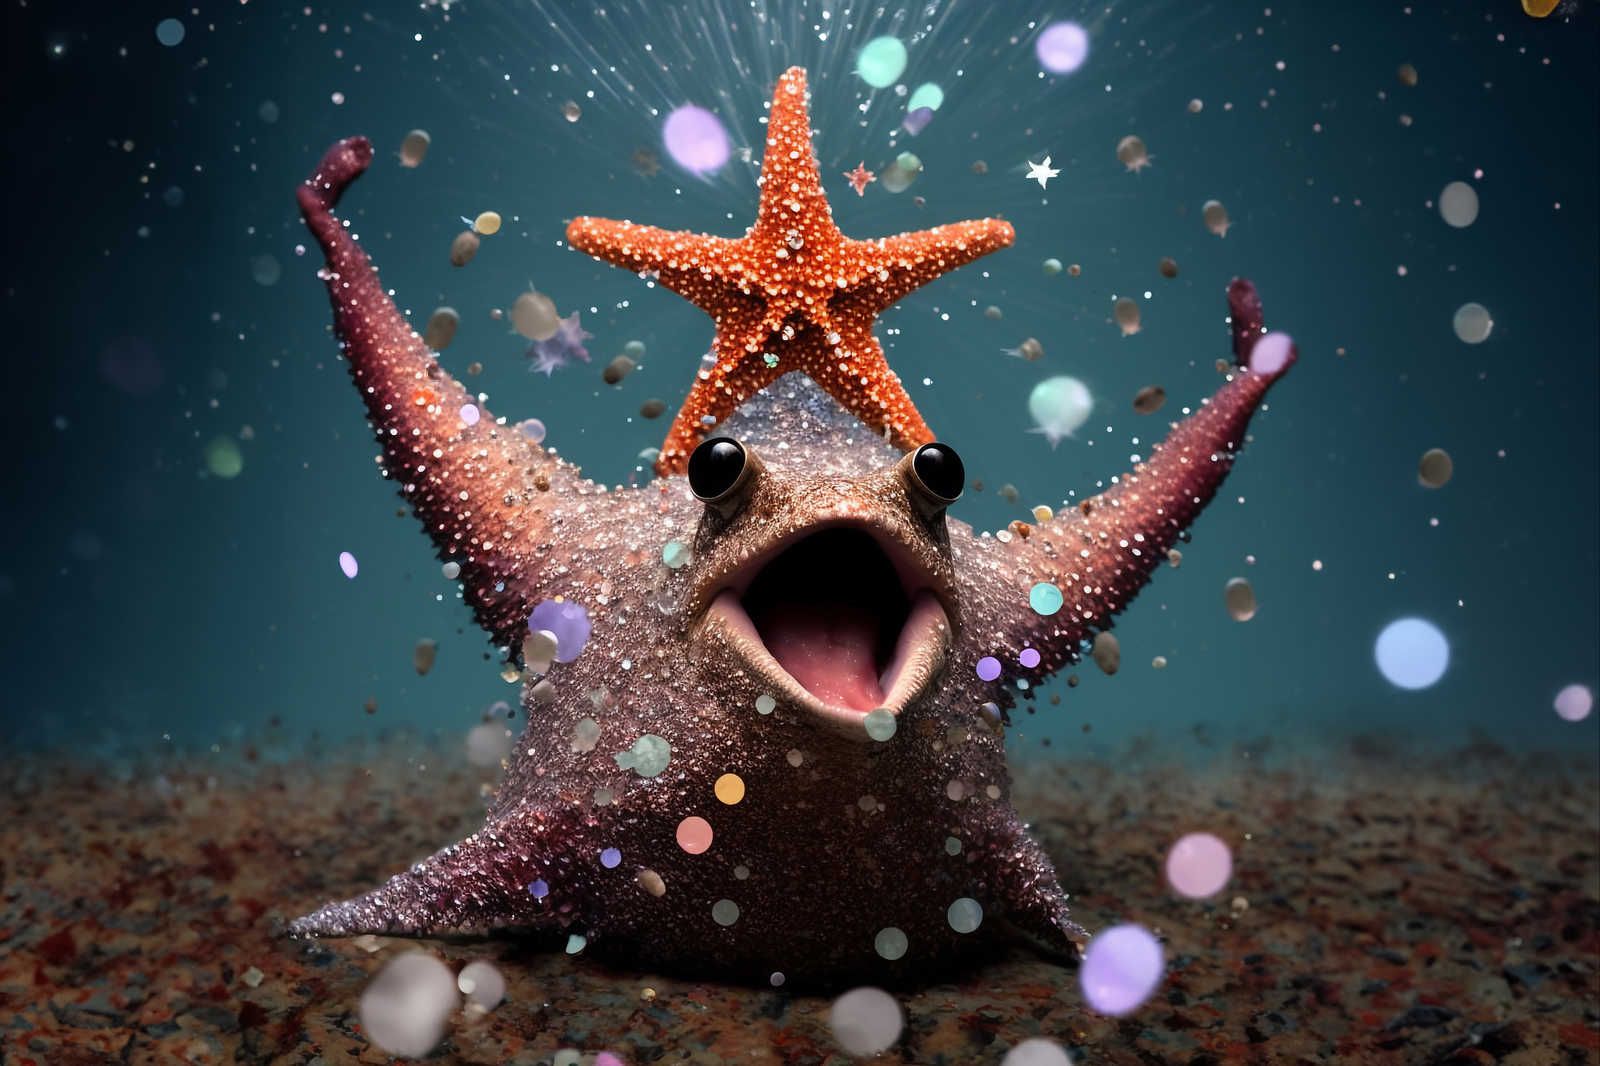             Toile KI »party starfish« - 90 cm x 60 cm
        